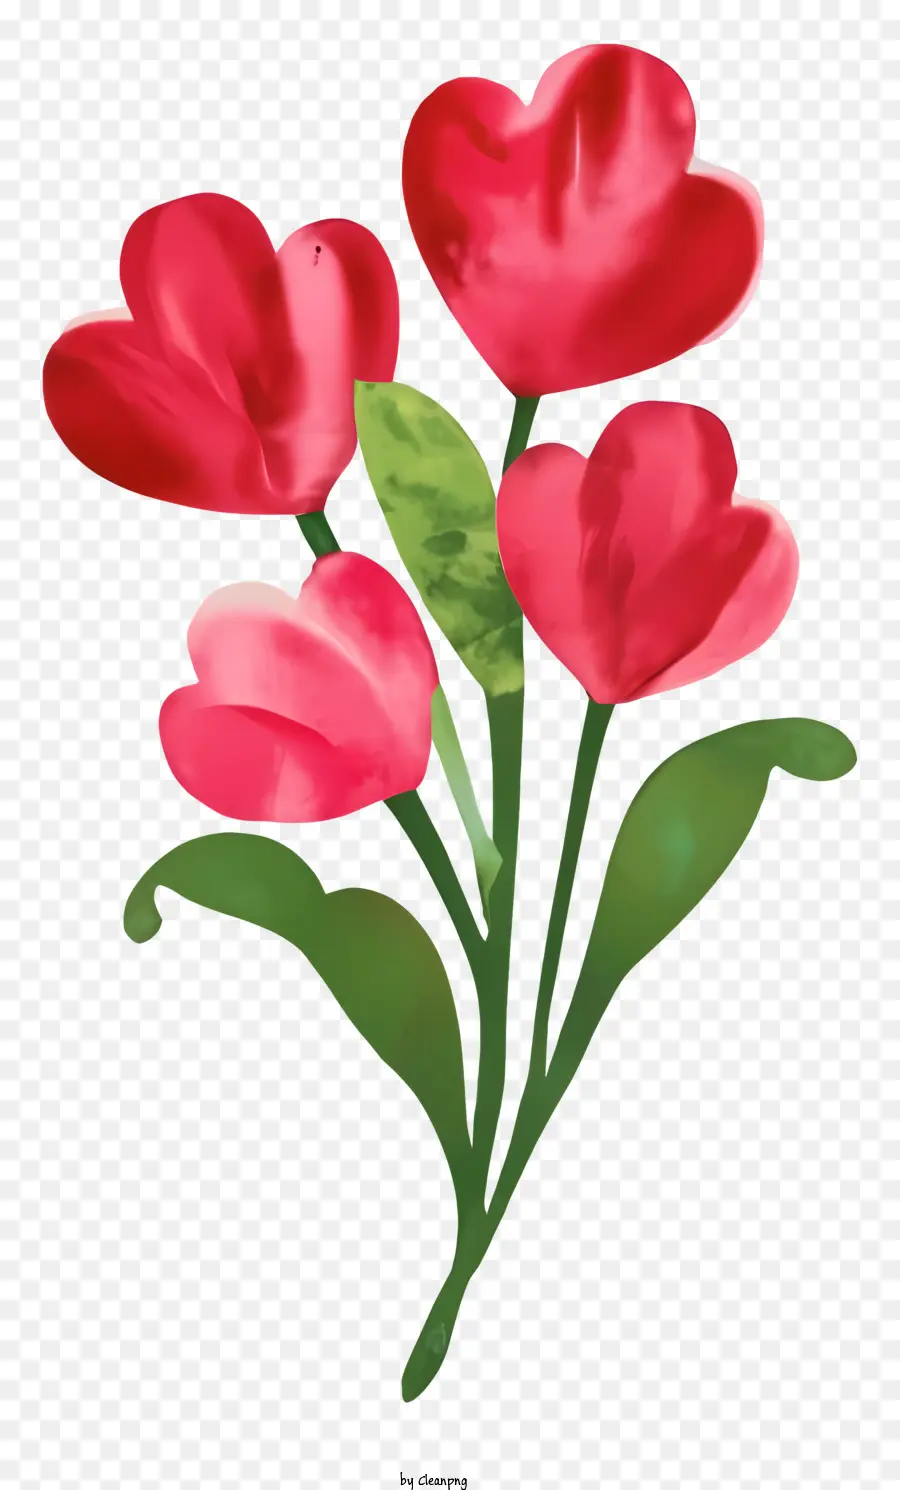 Blumenstrauß - Rote Tulpen mit grünen Blättern im Blumenstrauß angeordnet